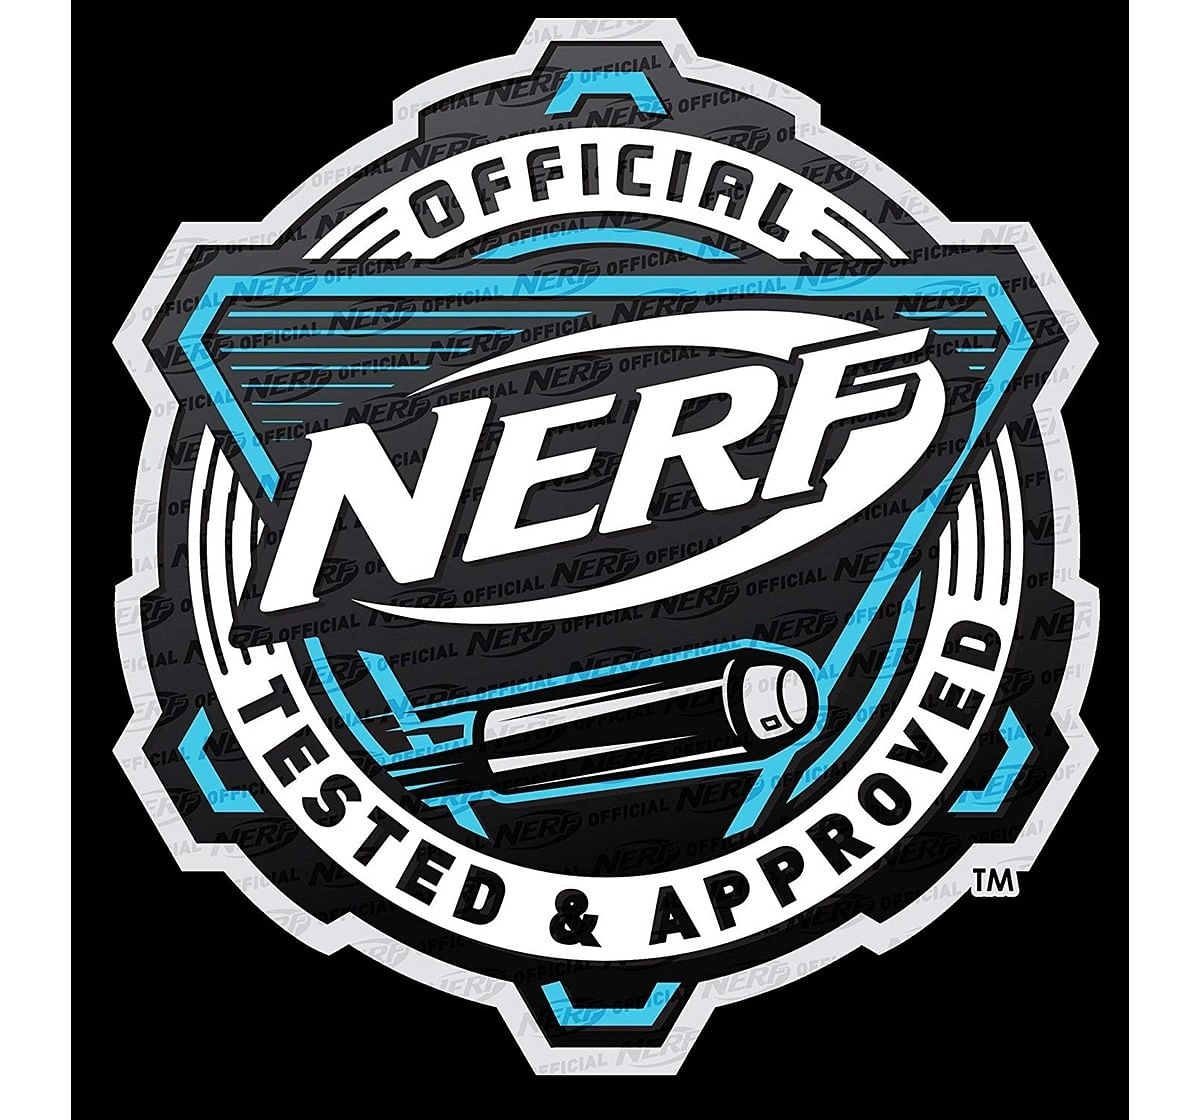 Nerf N-Strike Elite Accu Strike Dart Refill Pack Target Games and Darts for Kids age 6Y+ 